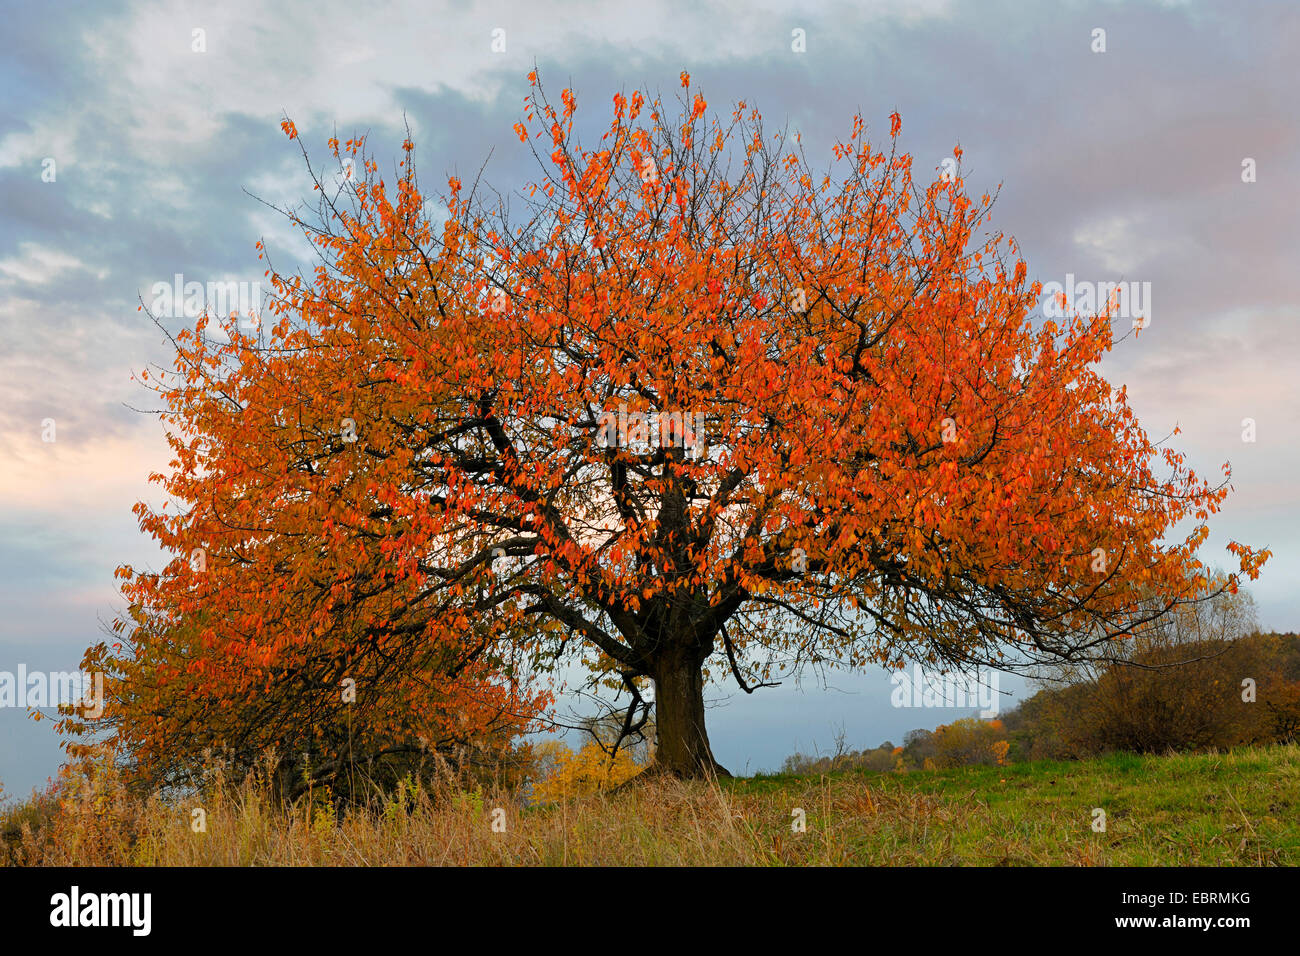 De cerise sauvage, cerise, gean, le merisier (Prunus avium), arbre de la cerise dans l'automne à la lumière du soir, l'Allemagne, Bade-Wurtemberg Banque D'Images